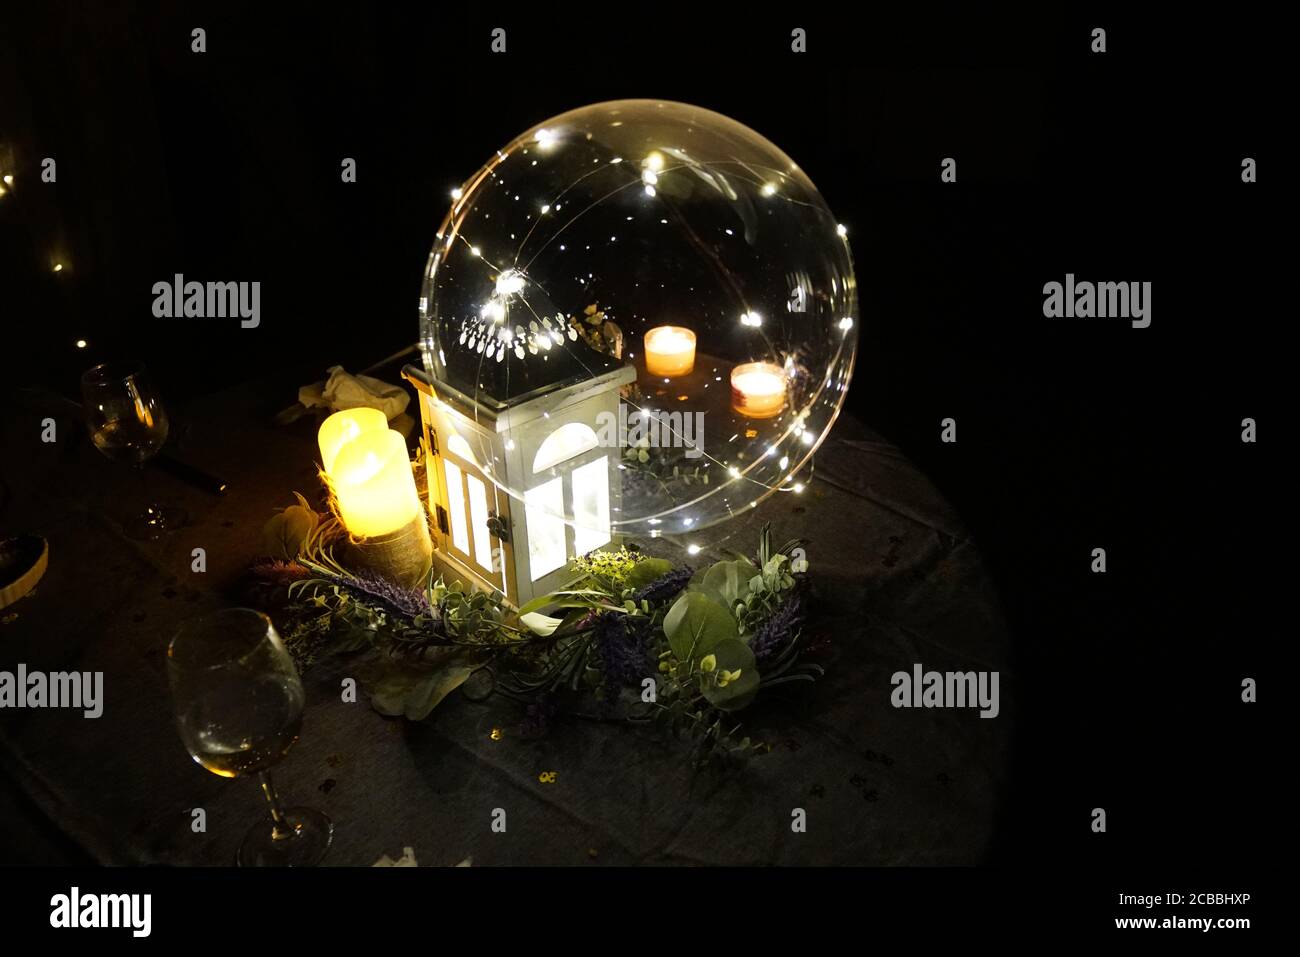 Primo piano di romantiche decorazioni serali in un ambiente buio Foto Stock